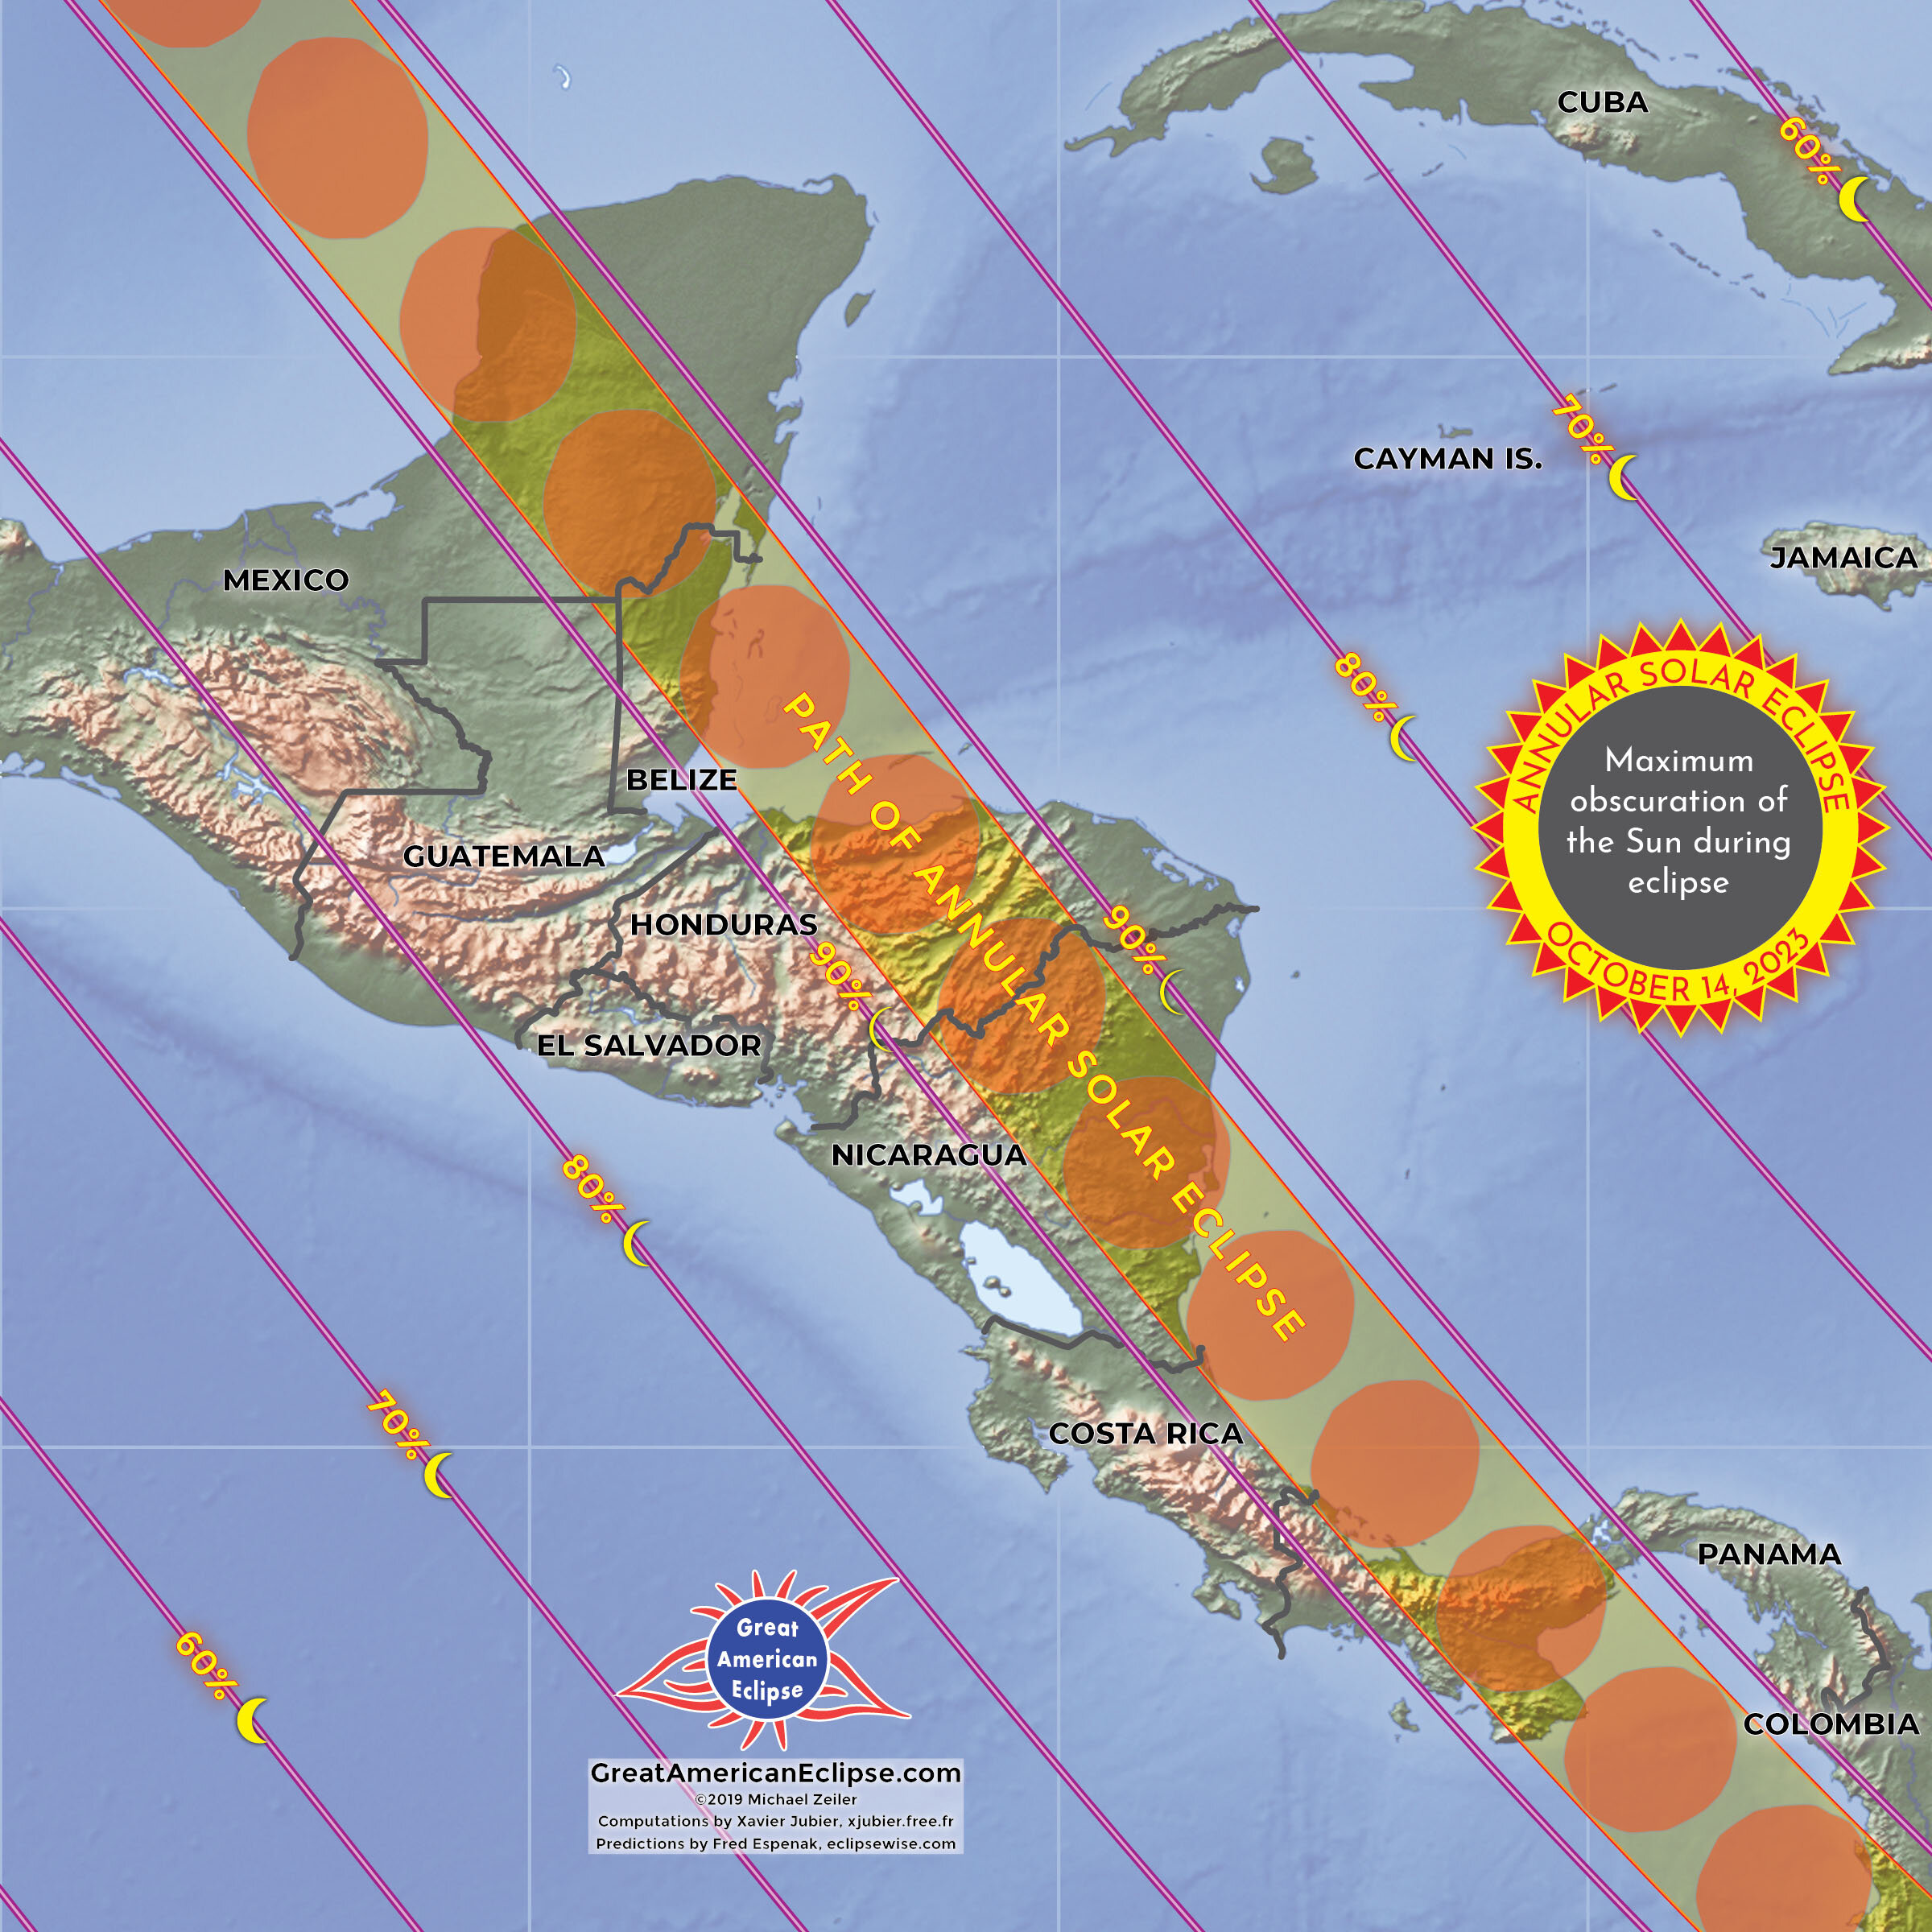 Campeche Manzanillo Cali, eclipsados el 14 de octubre Diario